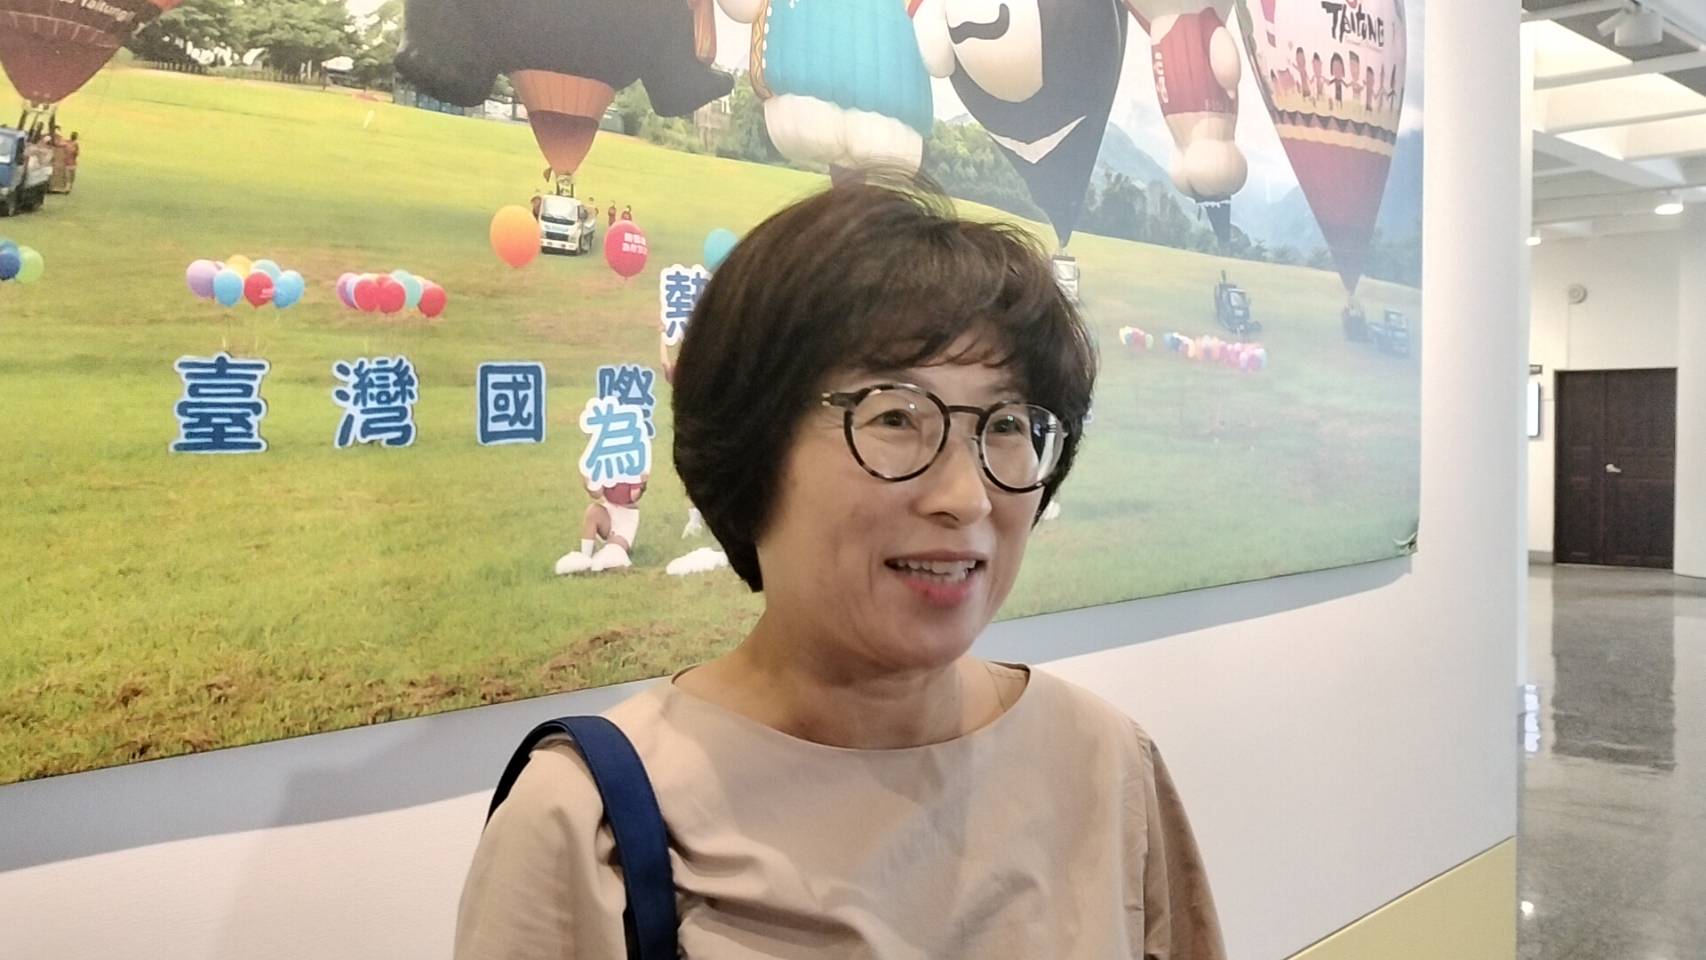 520正副总统就职典礼将届，台东县长饶庆铃今天表示，因目前议会定期开议中，她会试著努力排出时间参加。记者尤聪光／摄影